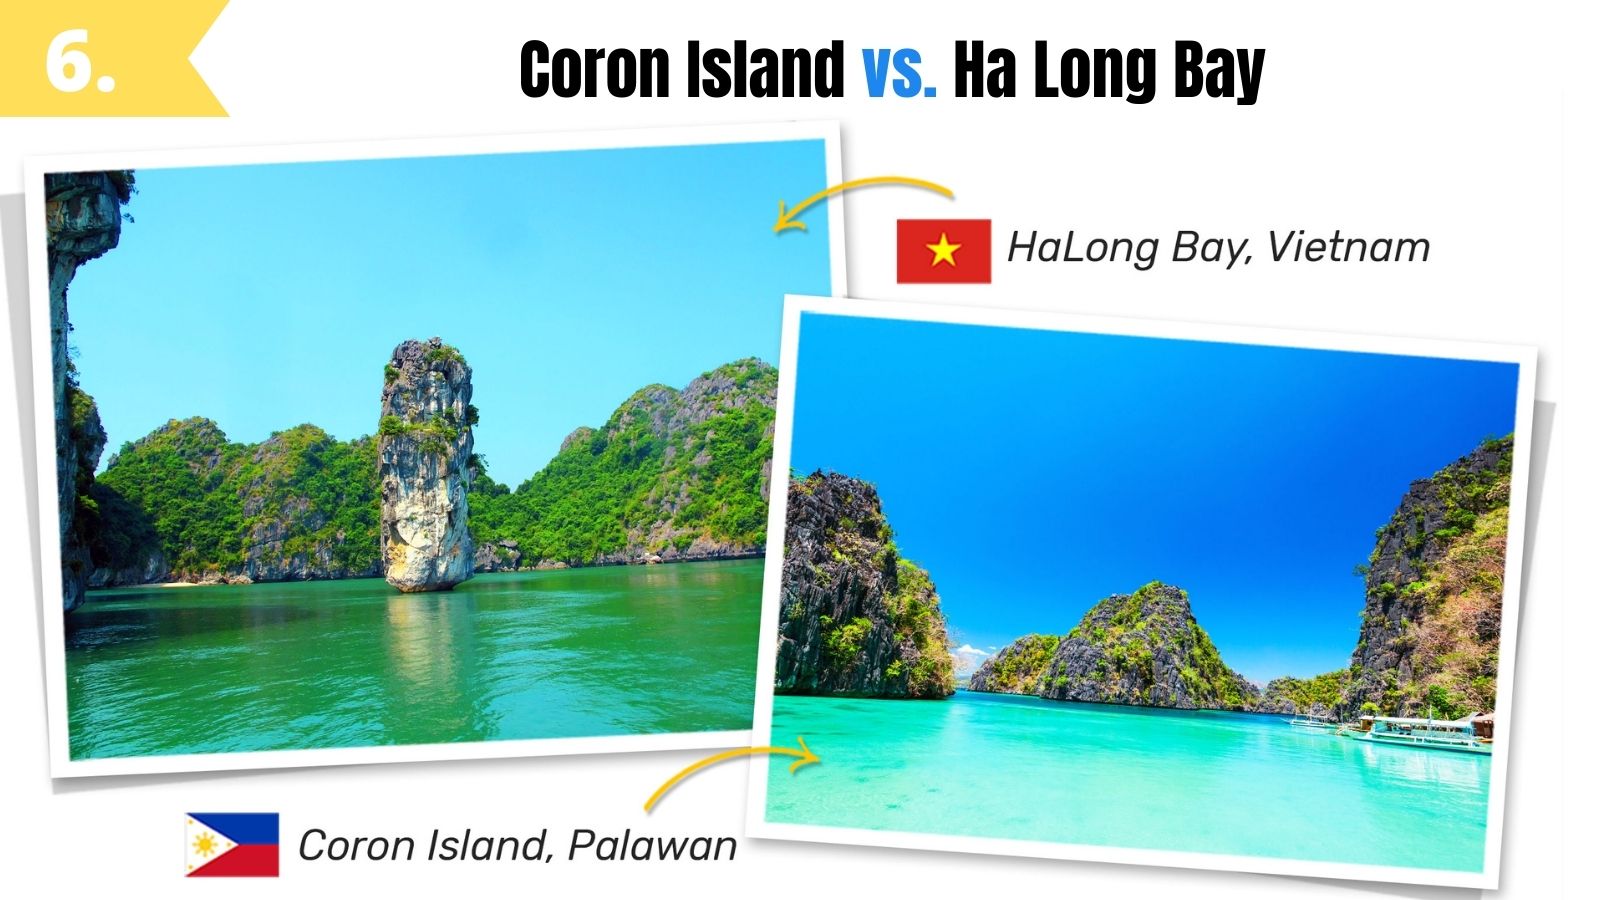 coron island palawan vs ha long bay vietnam